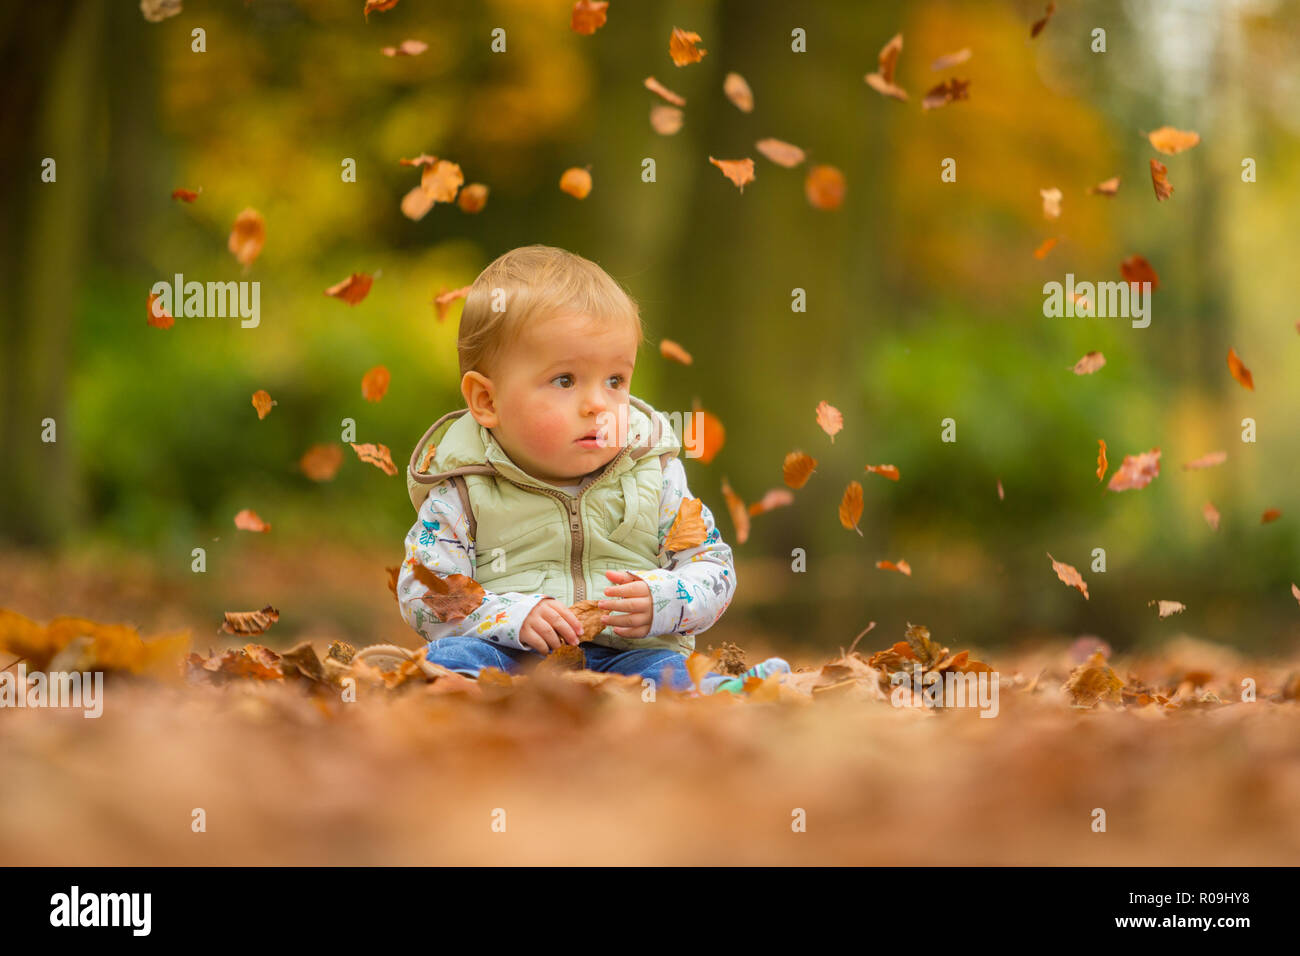 Un garçon de 18 mois blanc assis dans les feuilles d'automne avec les feuilles tomber Banque D'Images